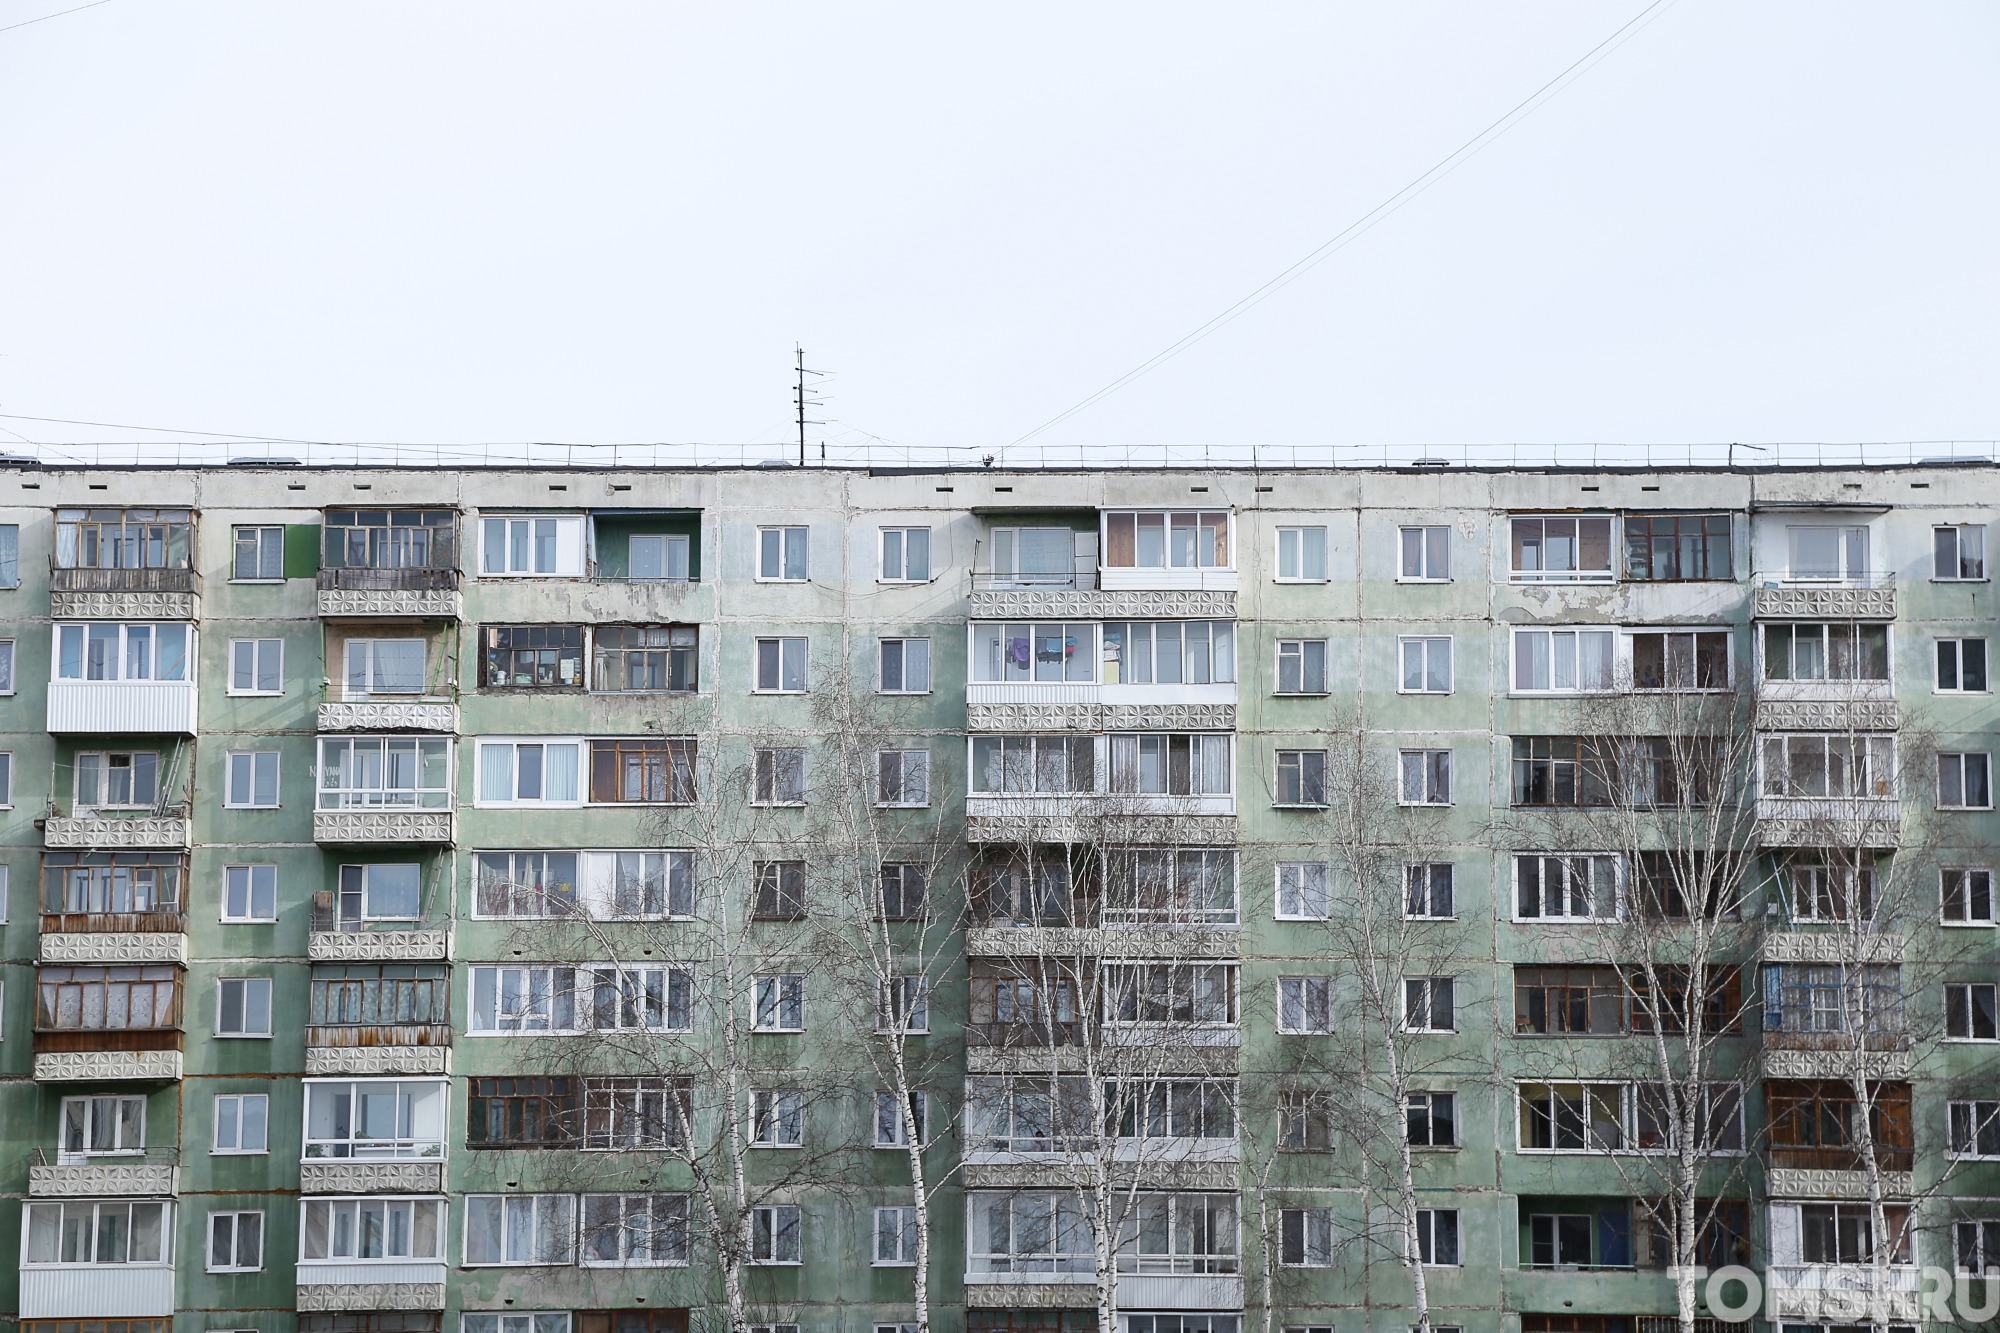 В Томскстате рассказали, где покупать квартиры в регионе дешевле всего